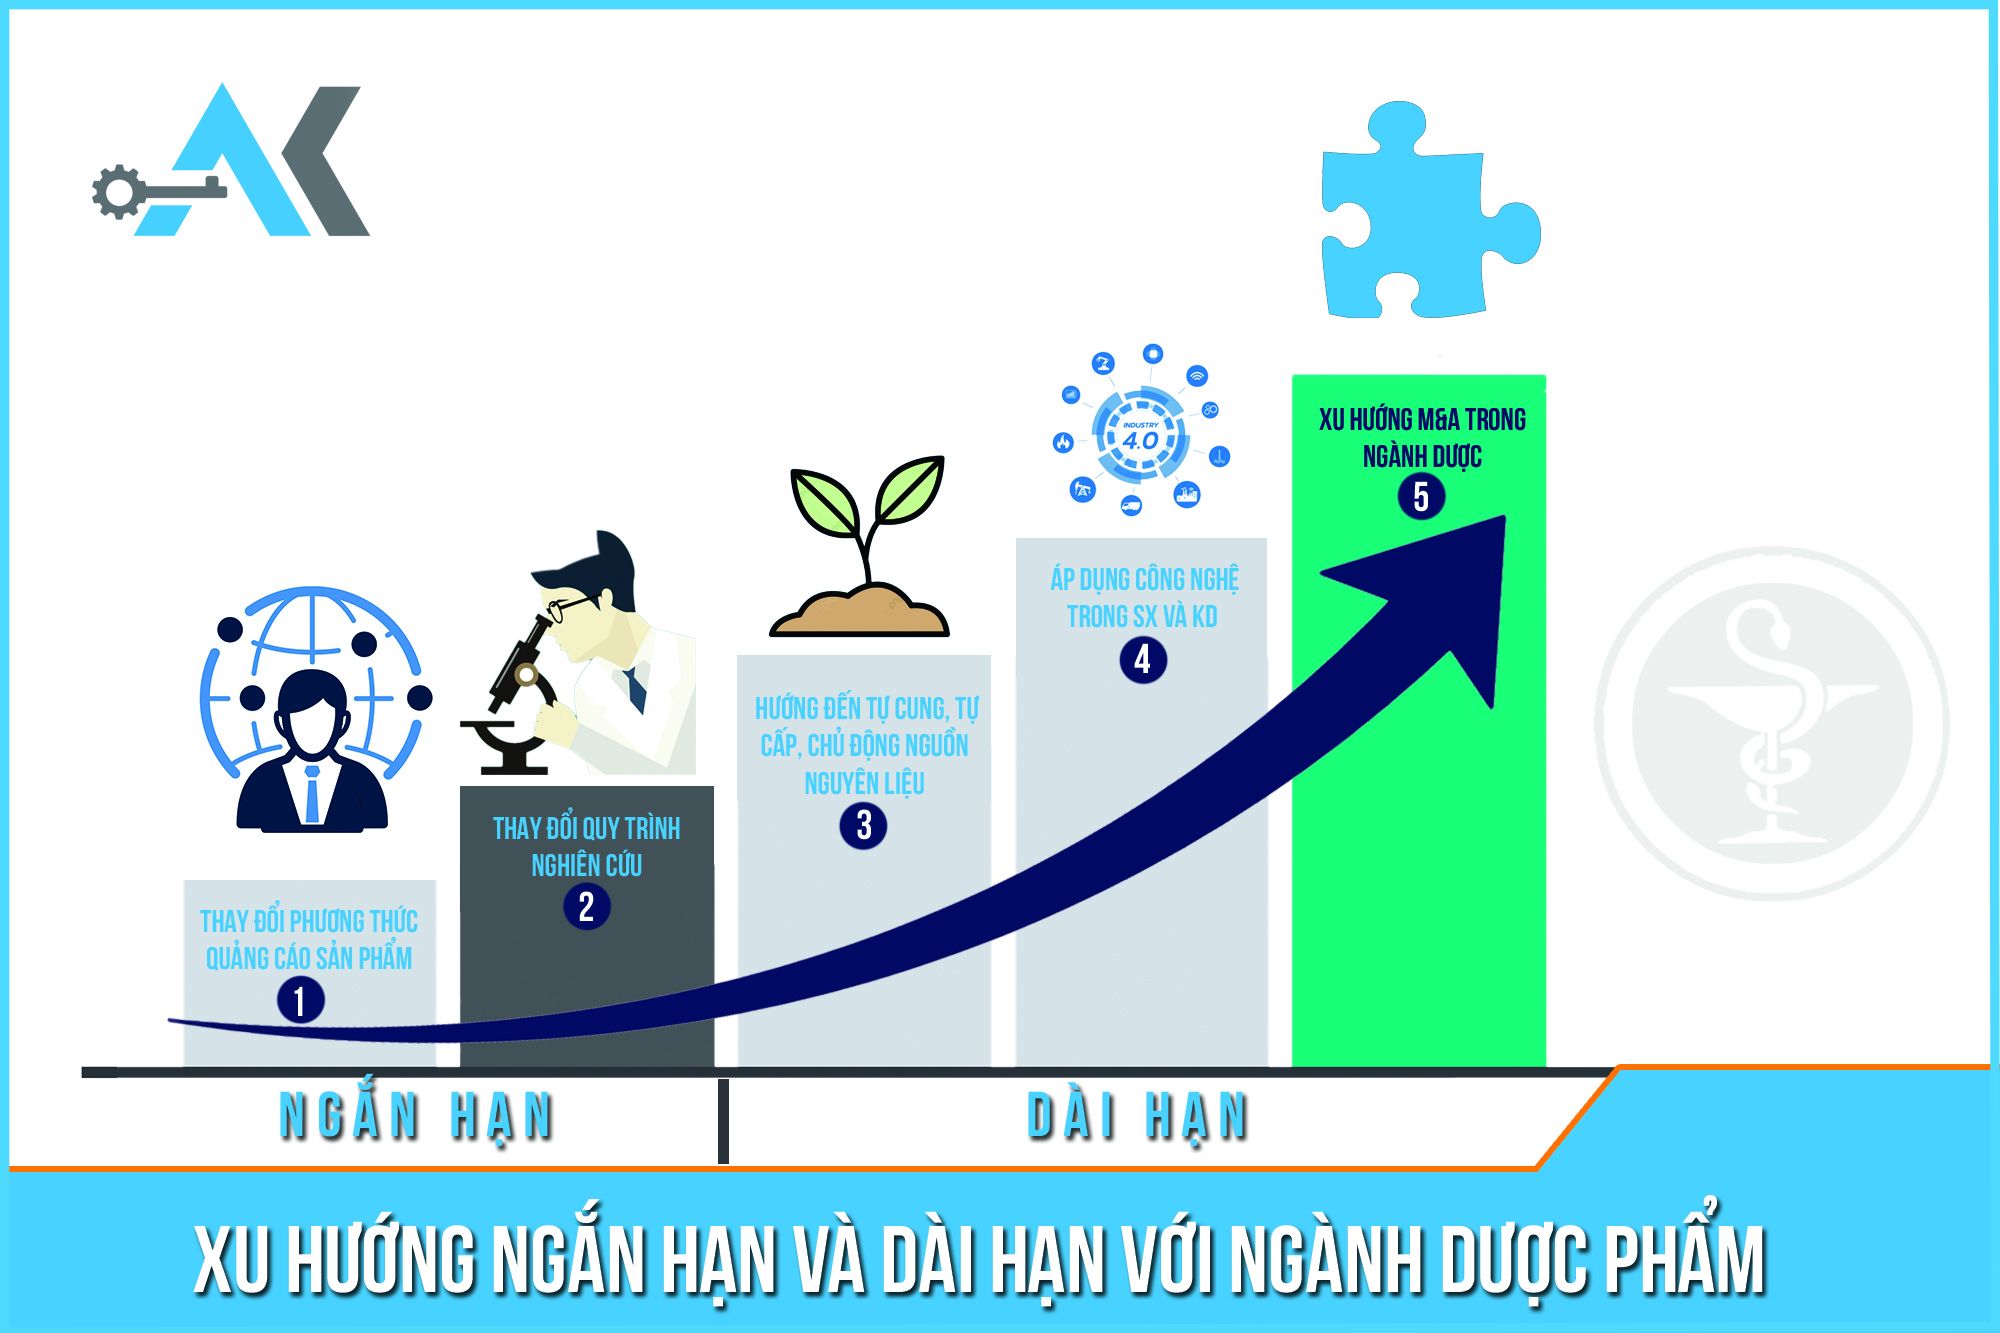 Xu hướng ngắn hạn và dài hạn ngành dược phẩm Việt năm 2021